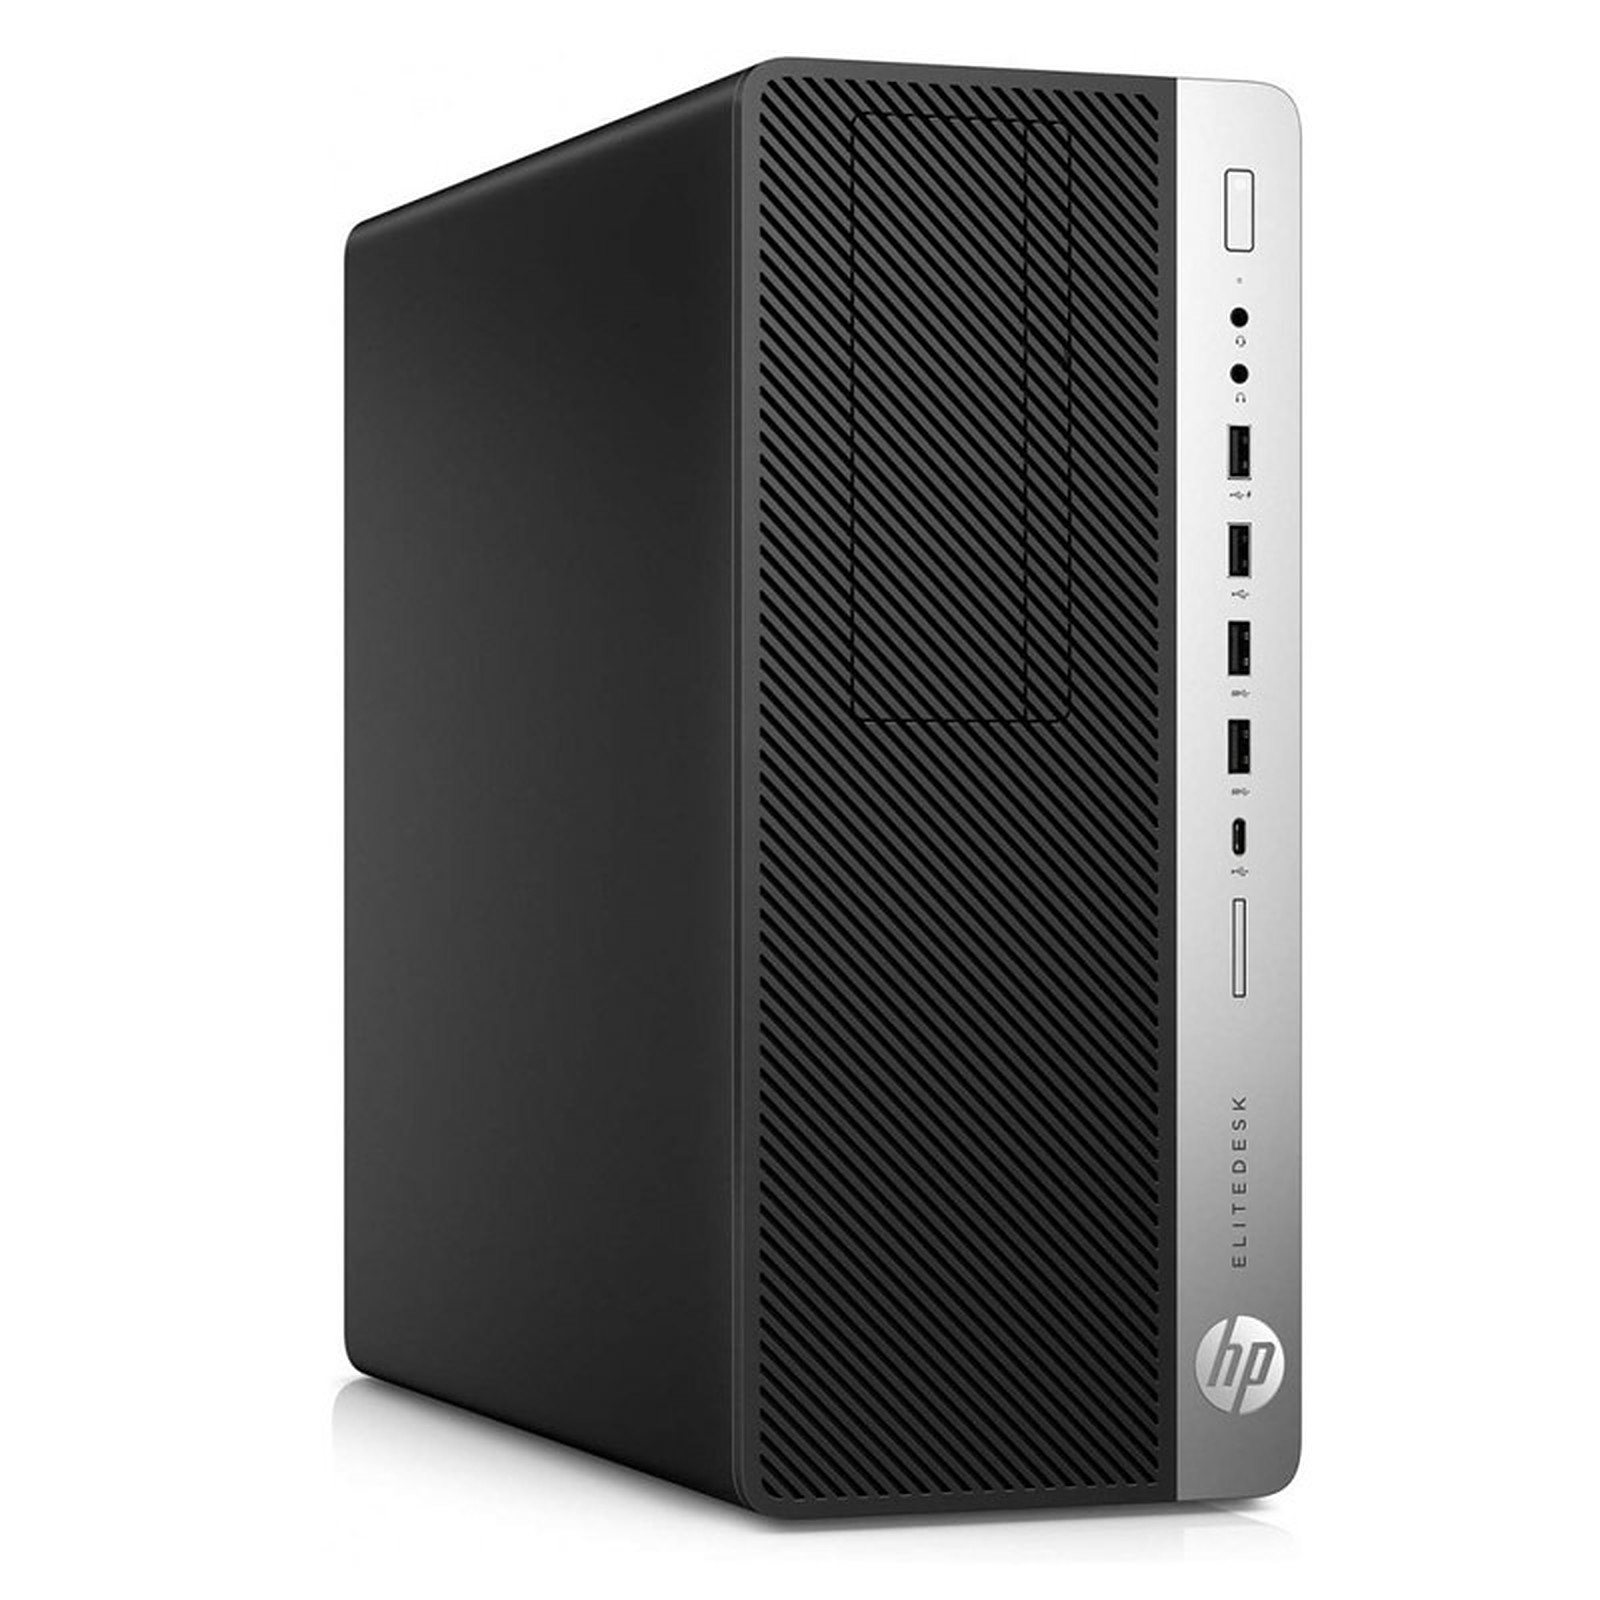 HP EliteDesk 800 G3 TWR (I565165) · Reconditionne - PC de bureau reconditionne HP